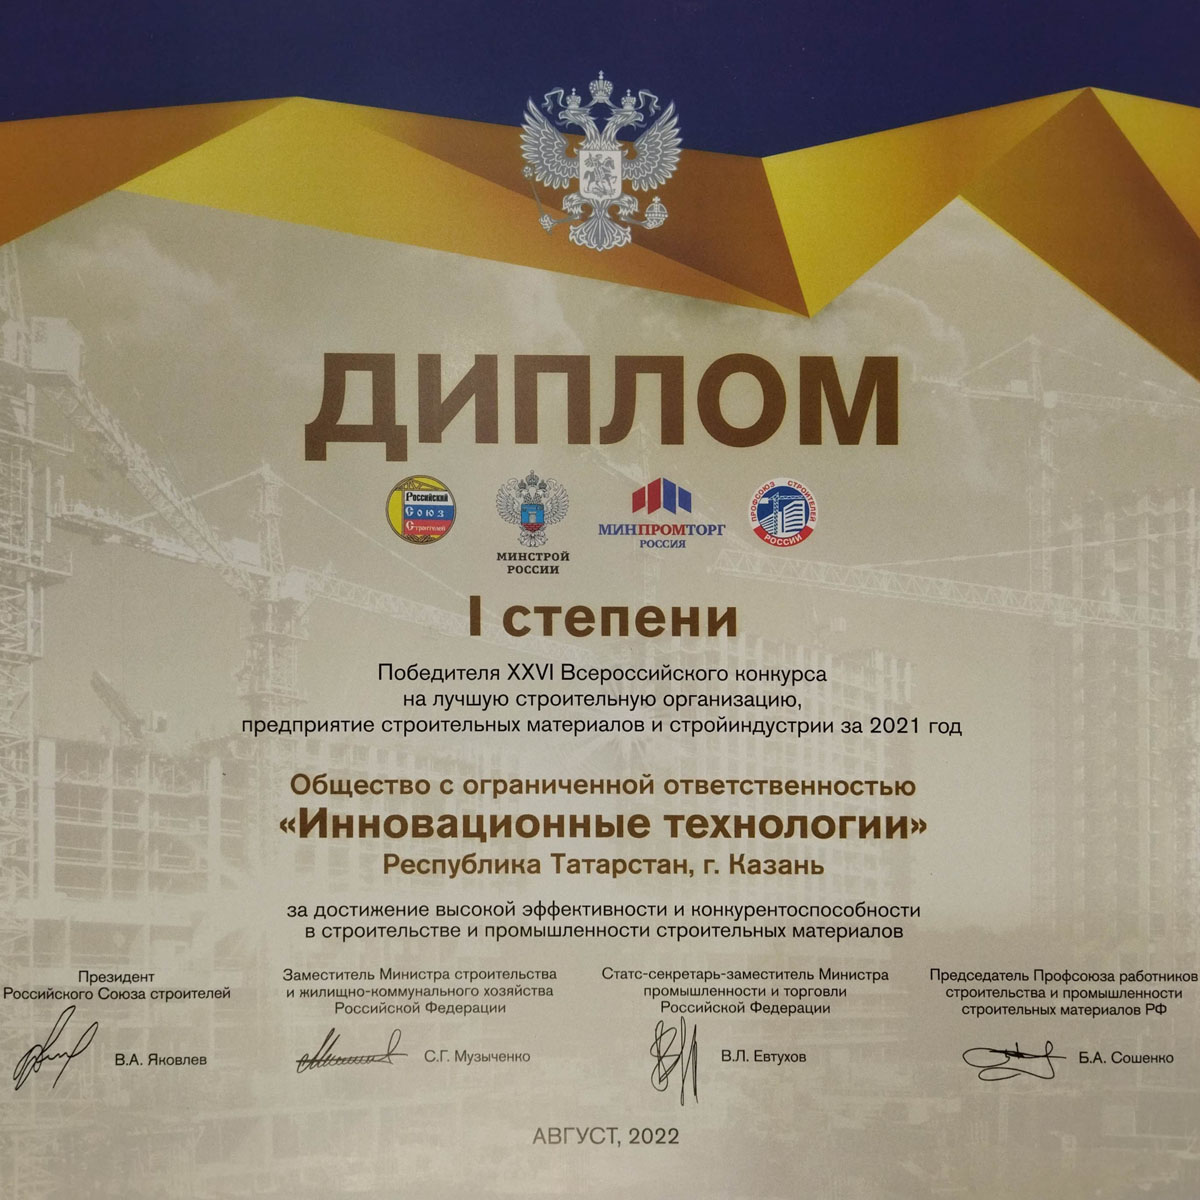 ГК INN-T GROUP стала победителем в XXVI Всероссийском конкурсе на лучшую проектную, изыскательскую и другую организацию аналогичного профиля строительного комплекса!